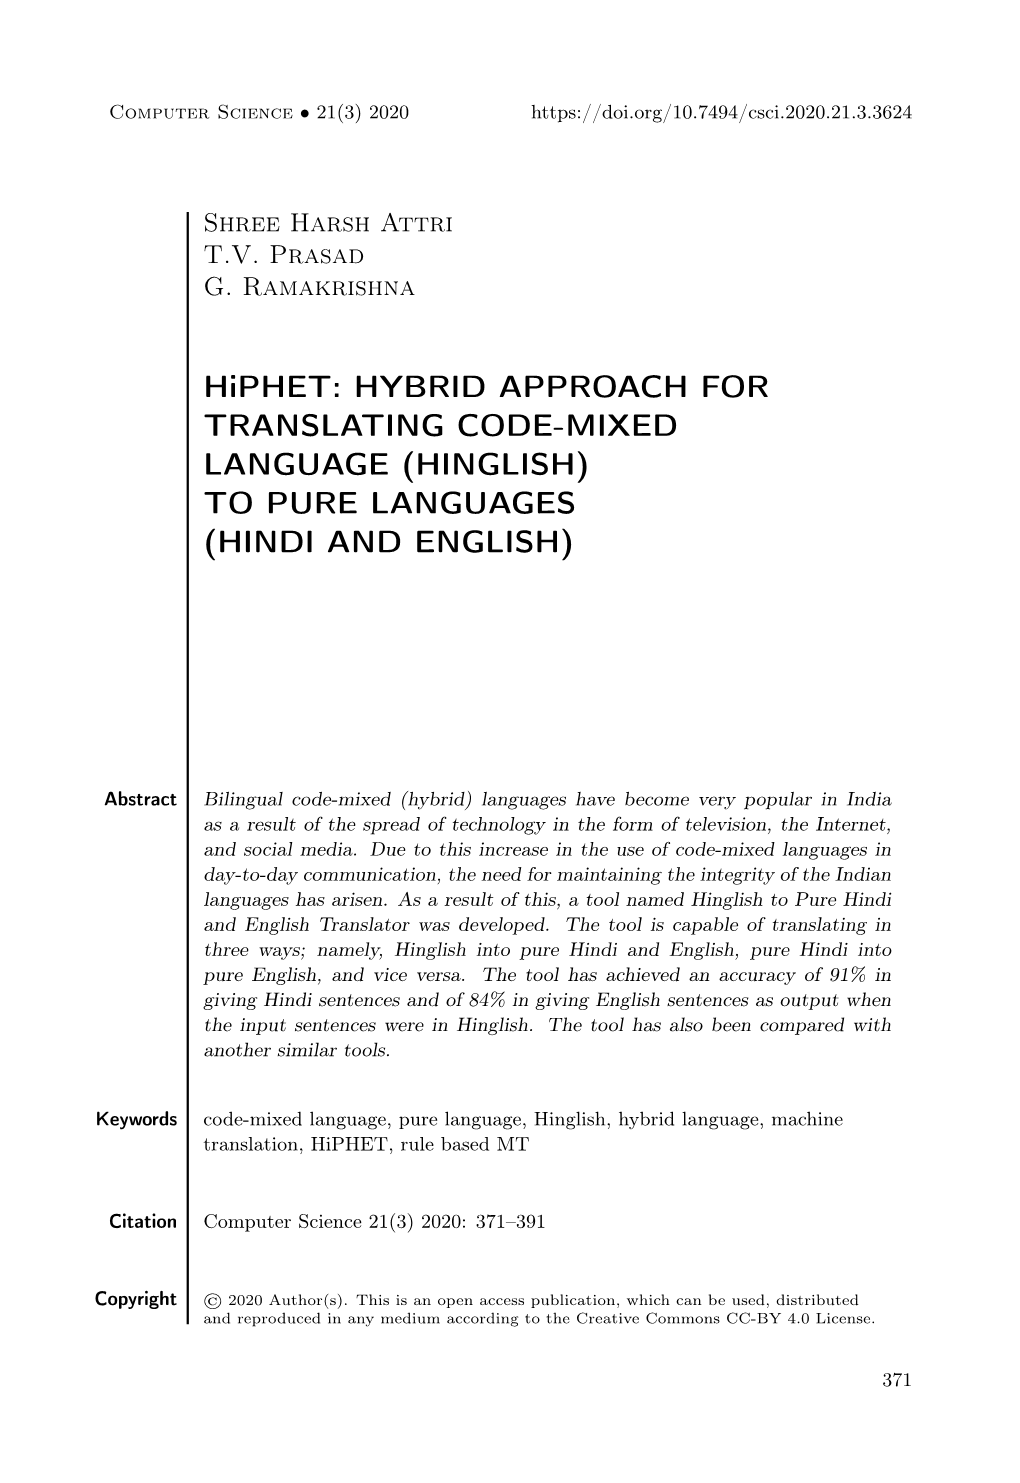 Hinglish) to Pure Languages (Hindi and English